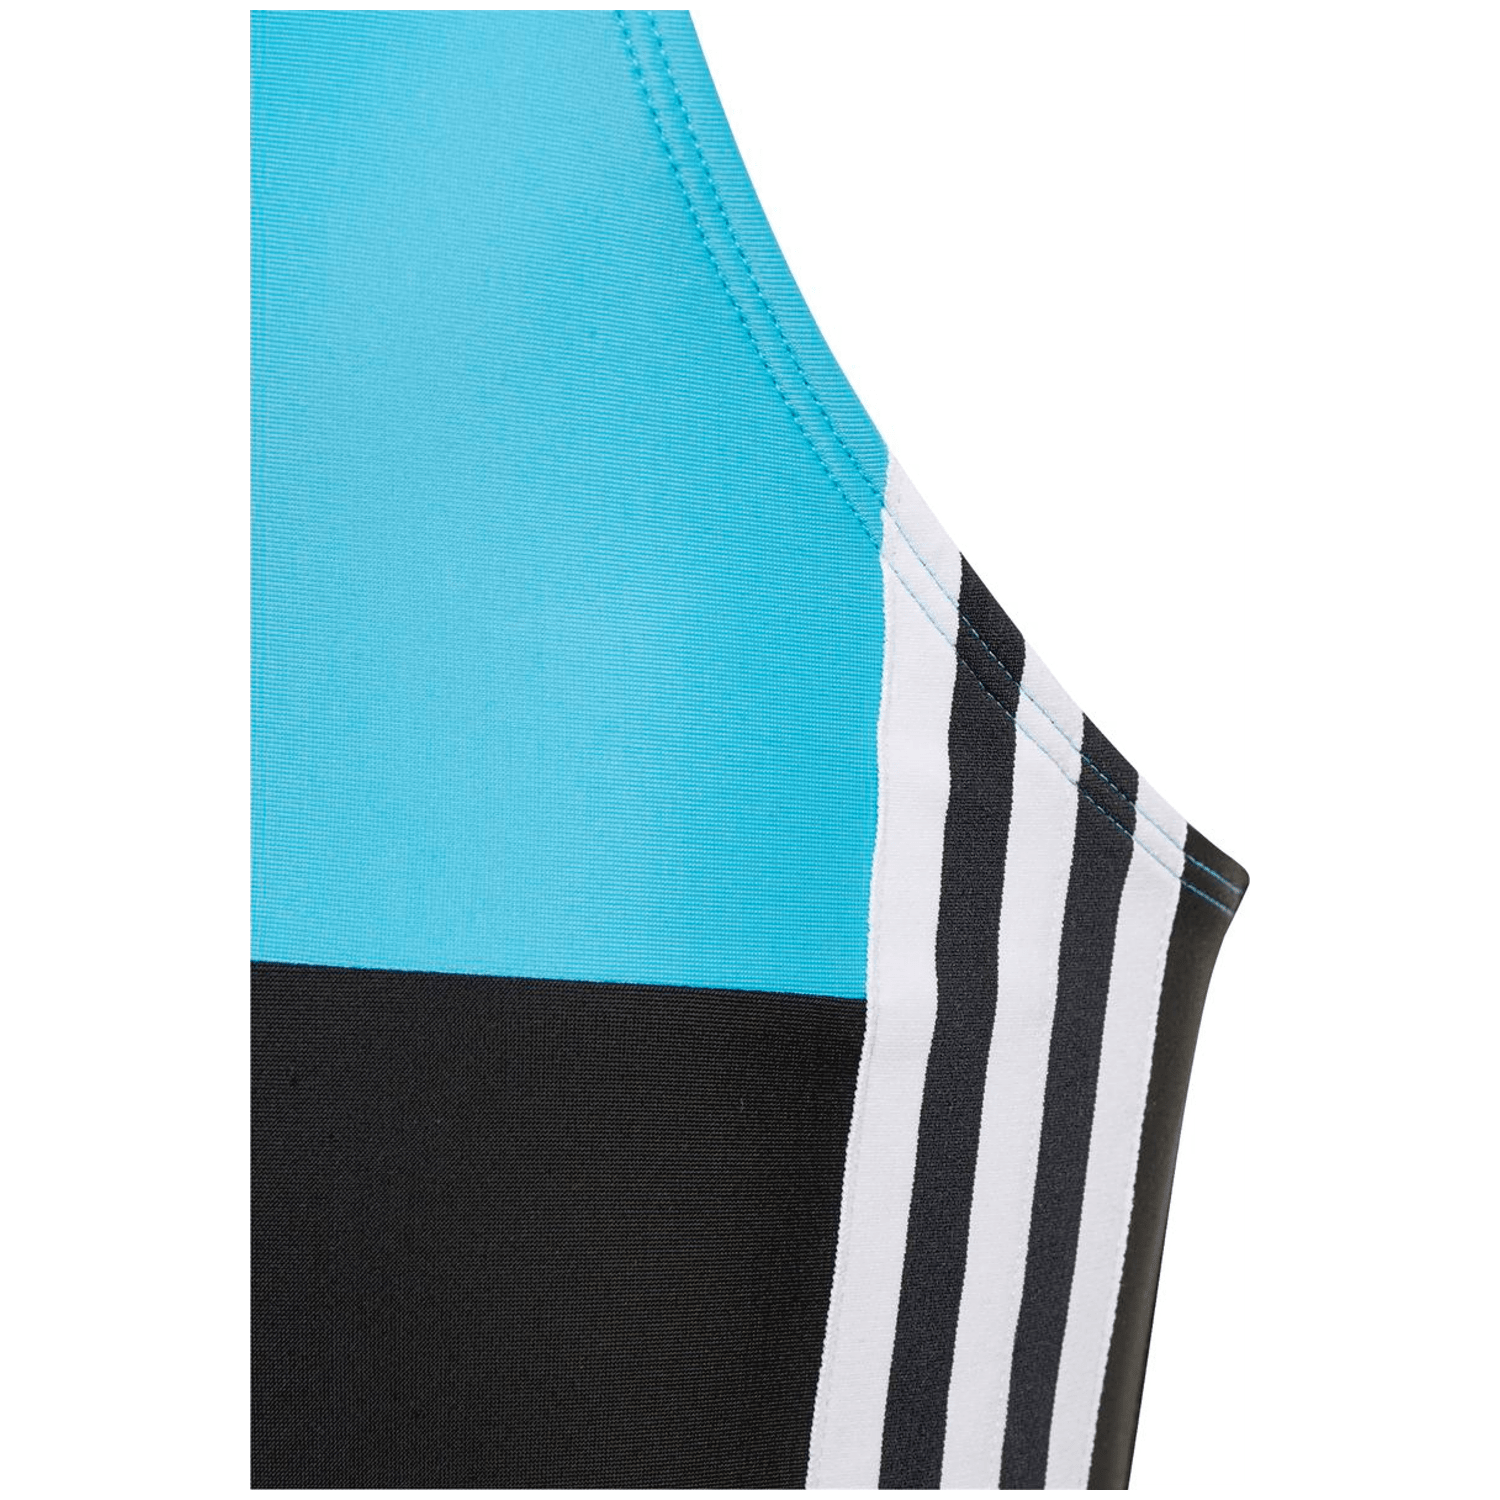 Adidas Colorblock 3-Streifen Badeanzug Mädchen